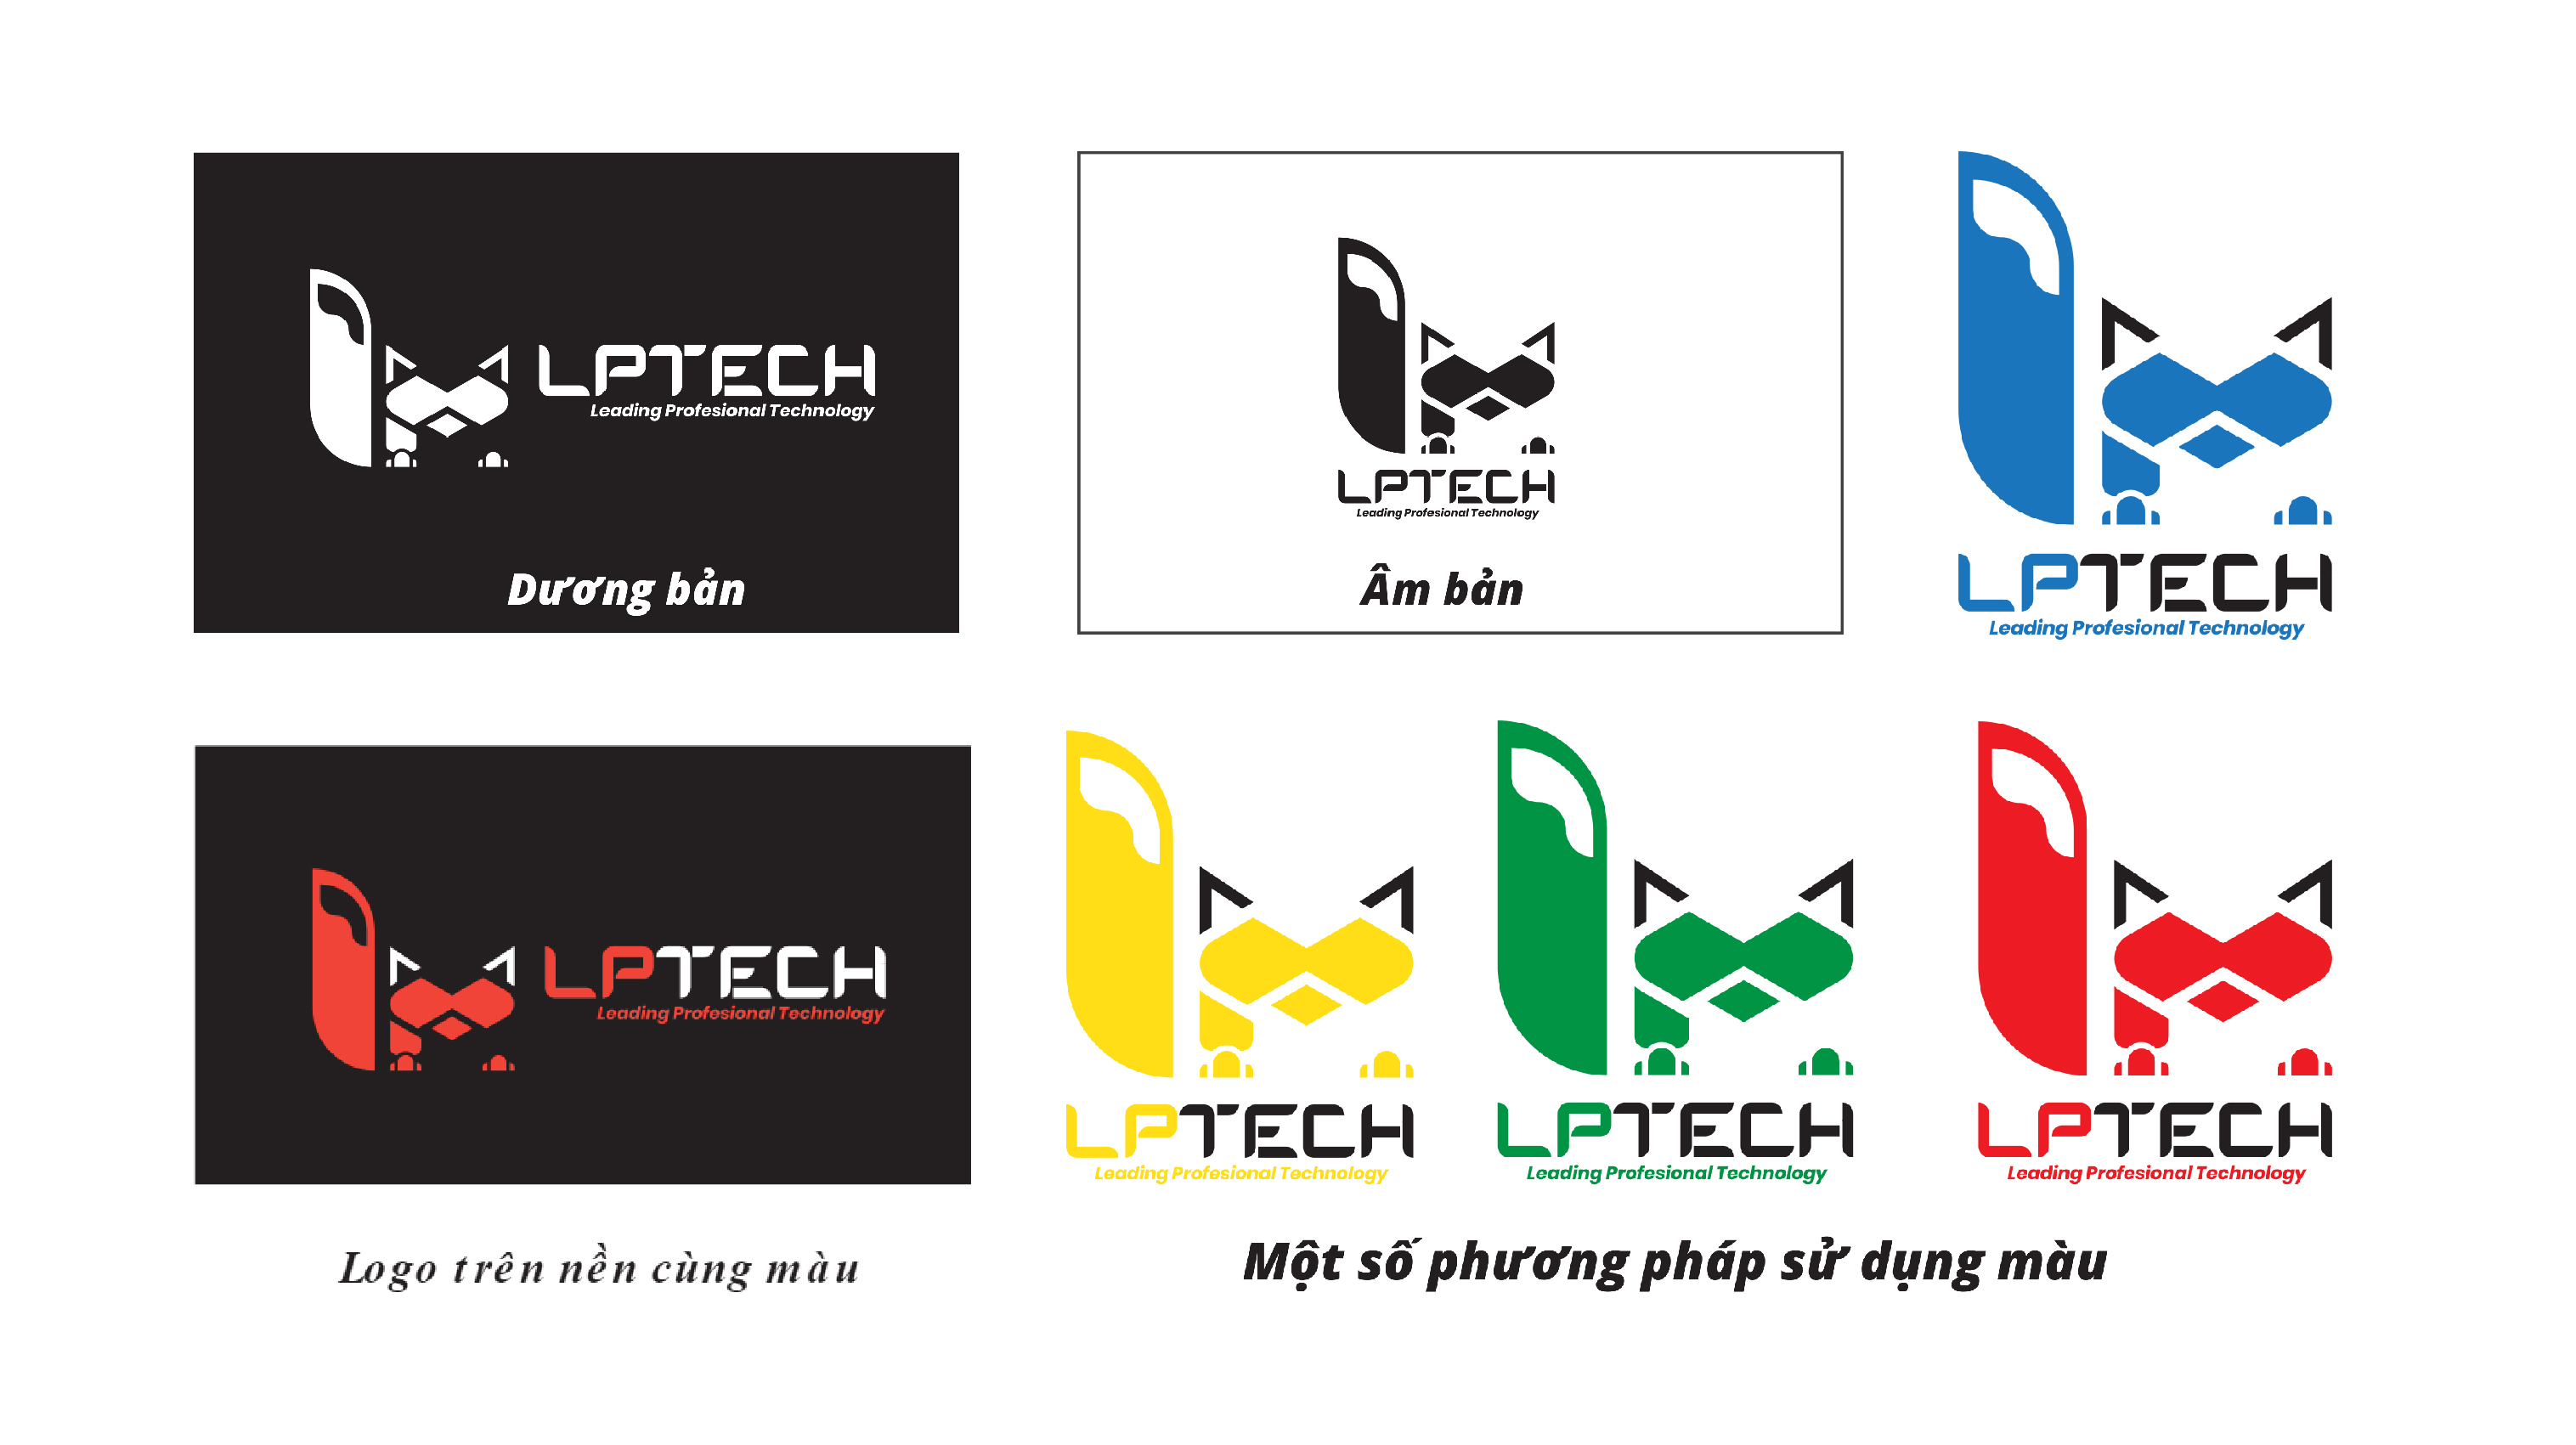 Logo LPTech mang đến sự hiện đại và sáng tạo cho thương hiệu của bạn. Với những đường nét cắt cạnh, logo LPTech là sự kết hợp hoàn hảo giữa tính chuyên nghiệp và tính thẩm mỹ trong thiết kế đồ họa.